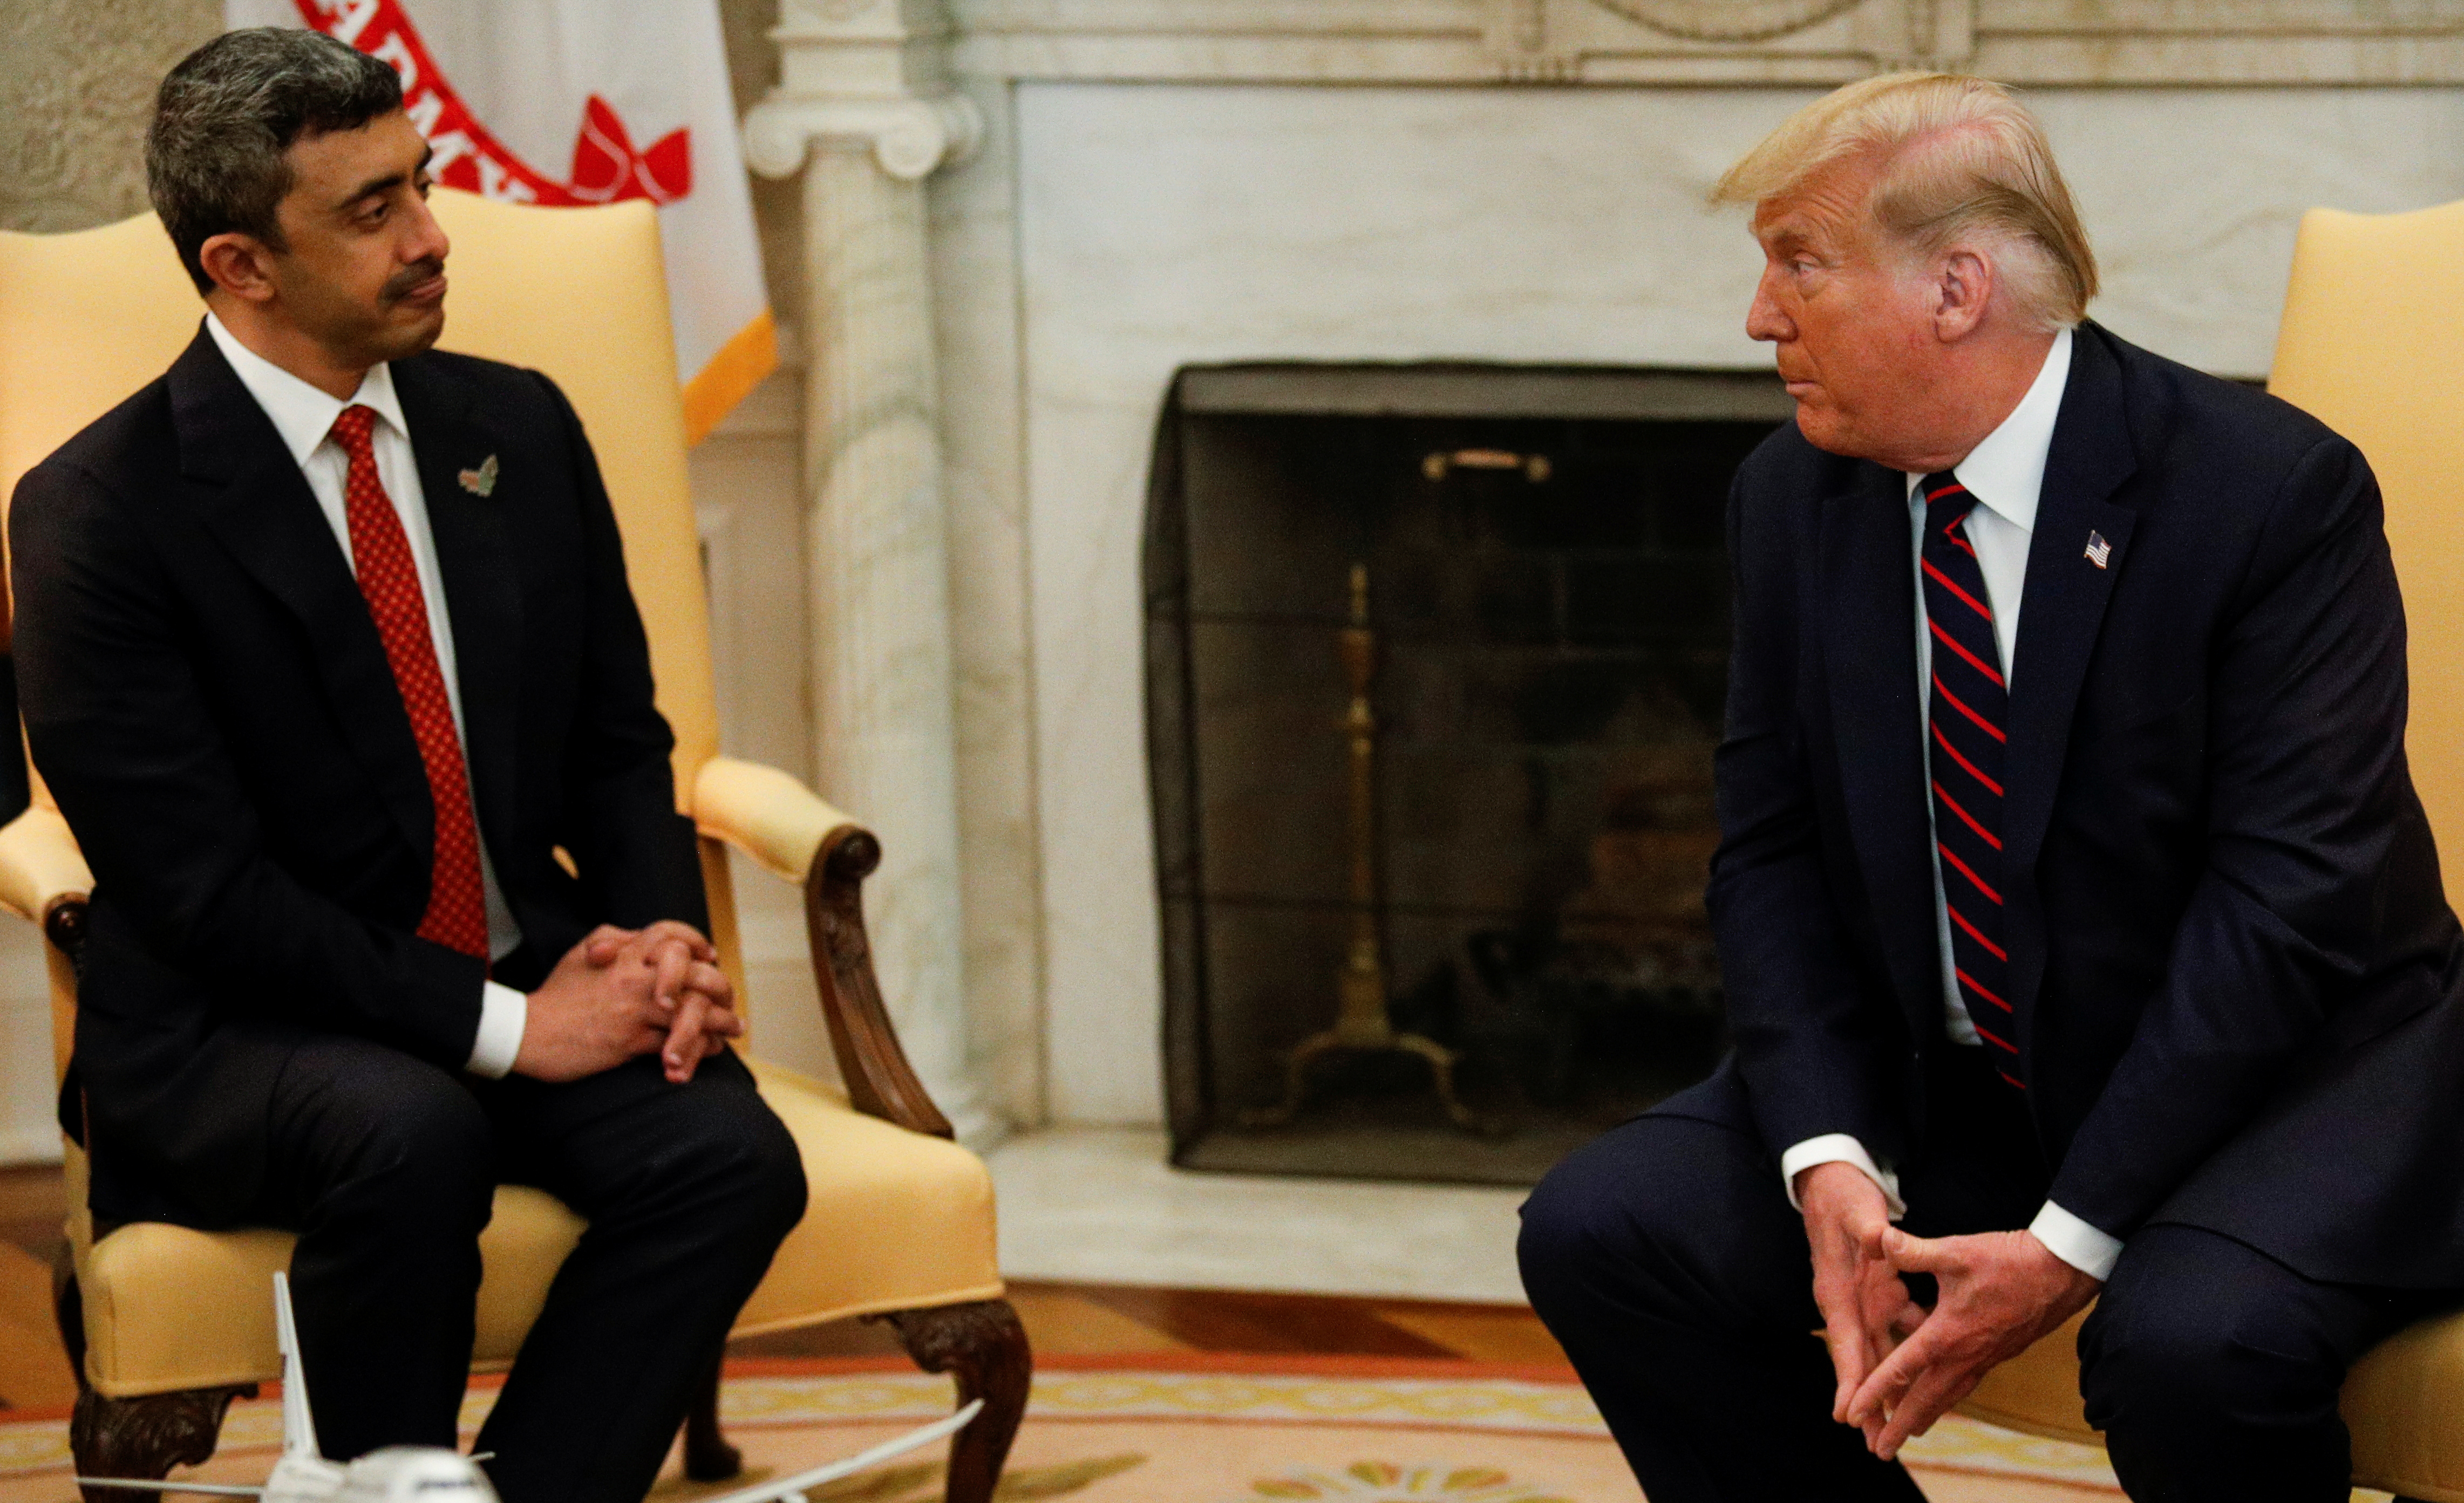 Trump se reunió con el ministro de Exteriores de Emiratios, Abdullah bin Zayed (Reuters)